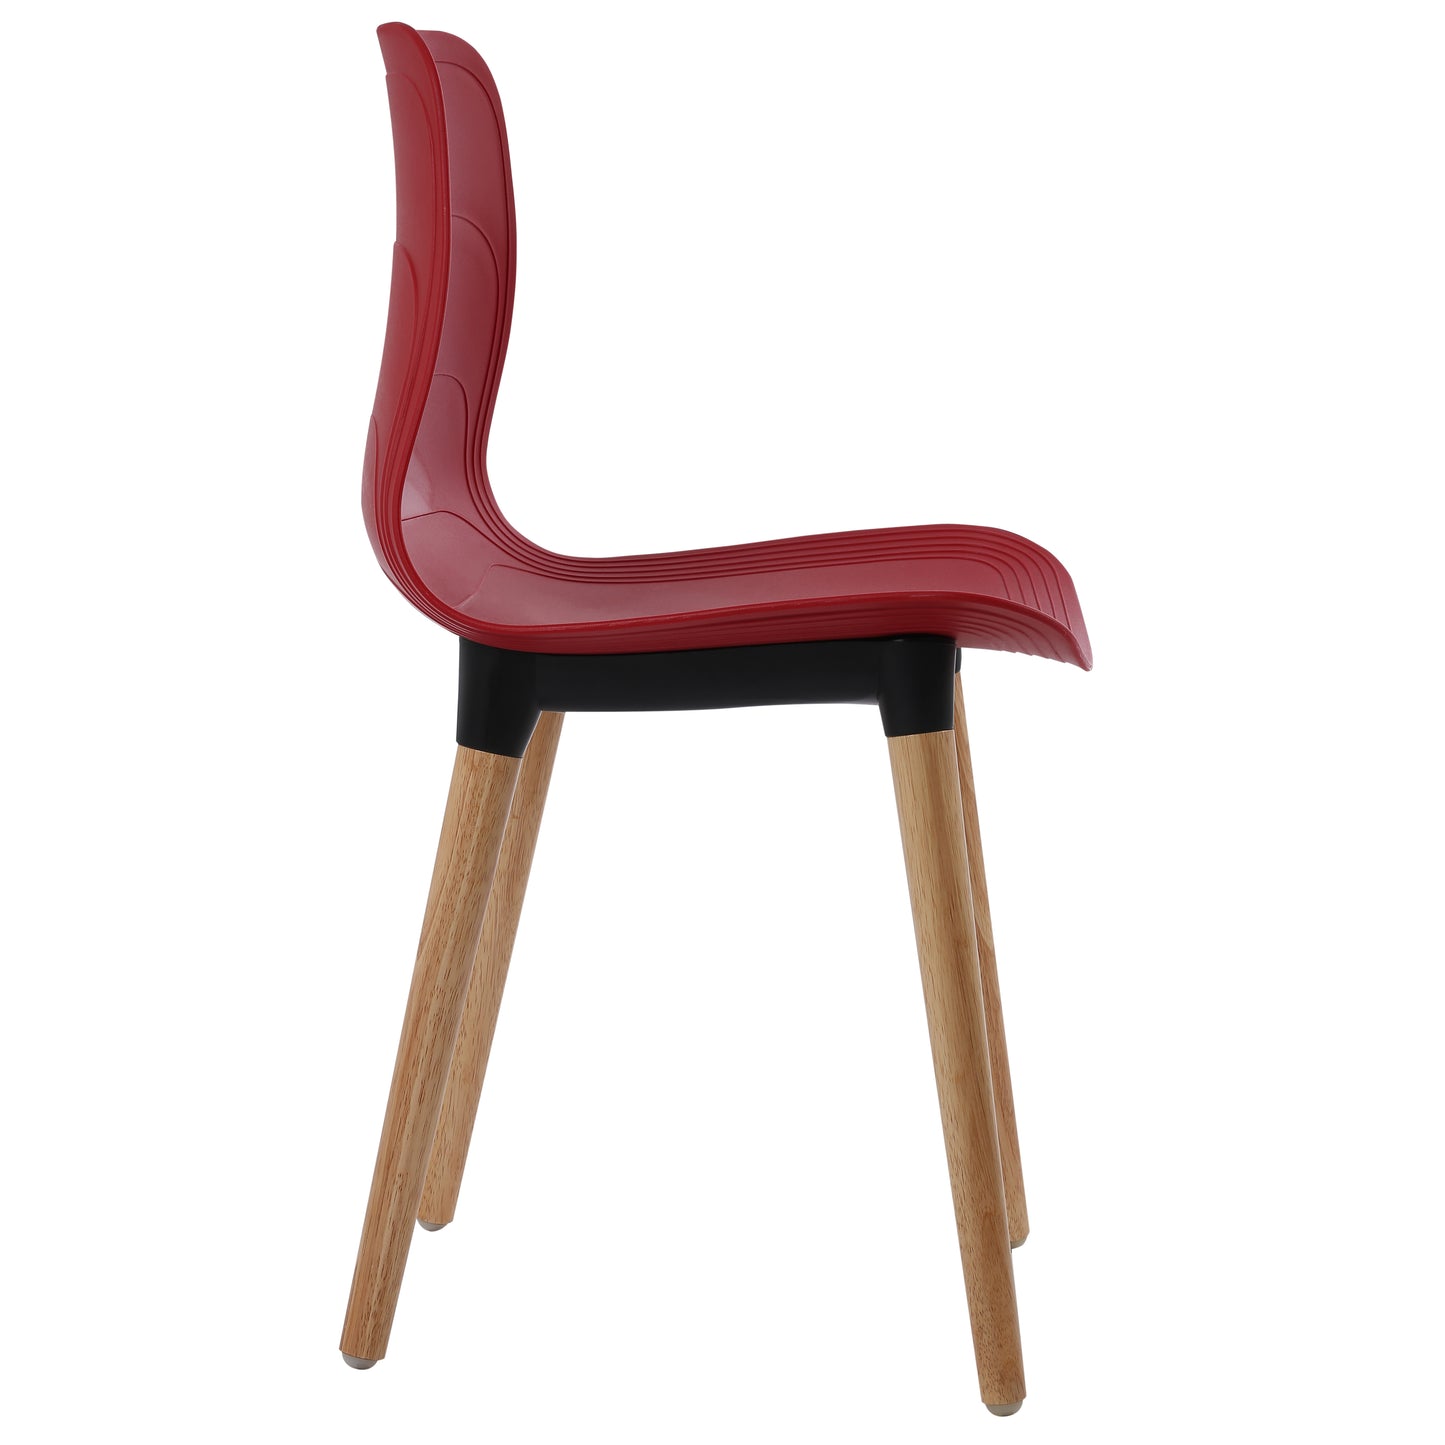 Ghế nhựa chân gỗ - HIFUWA-G (Đỏ đậm)